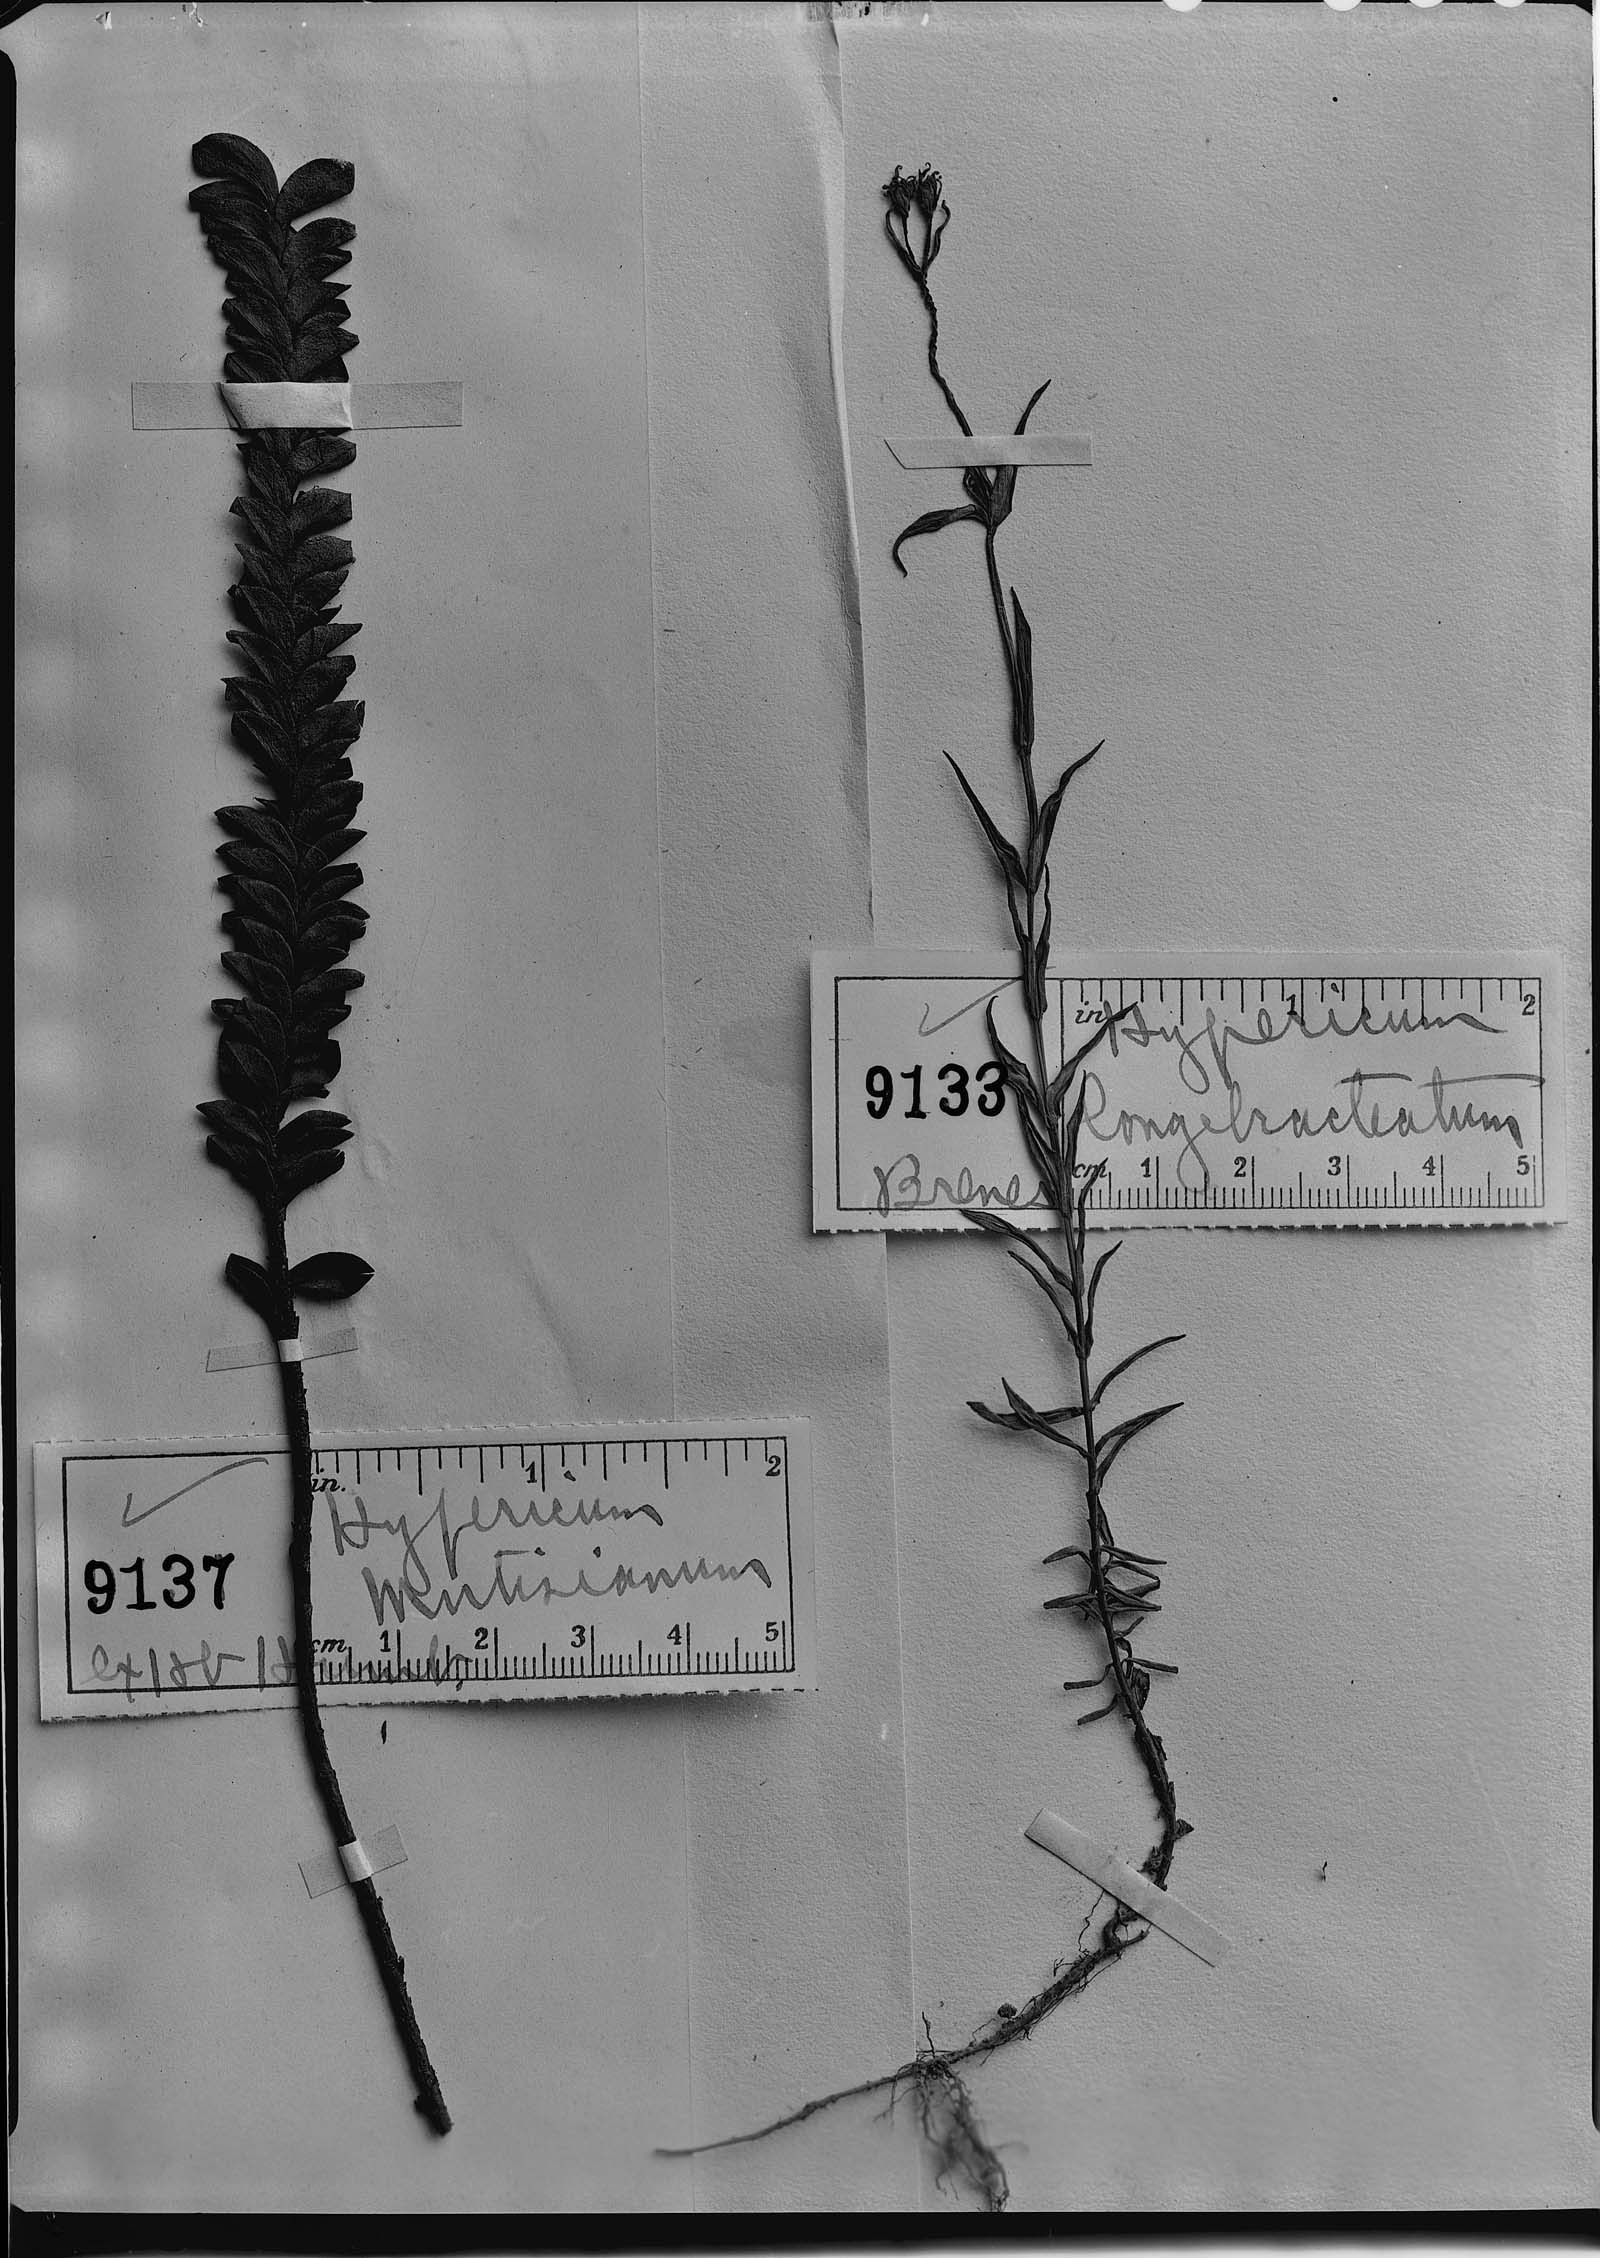 Hypericum thesiifolium image